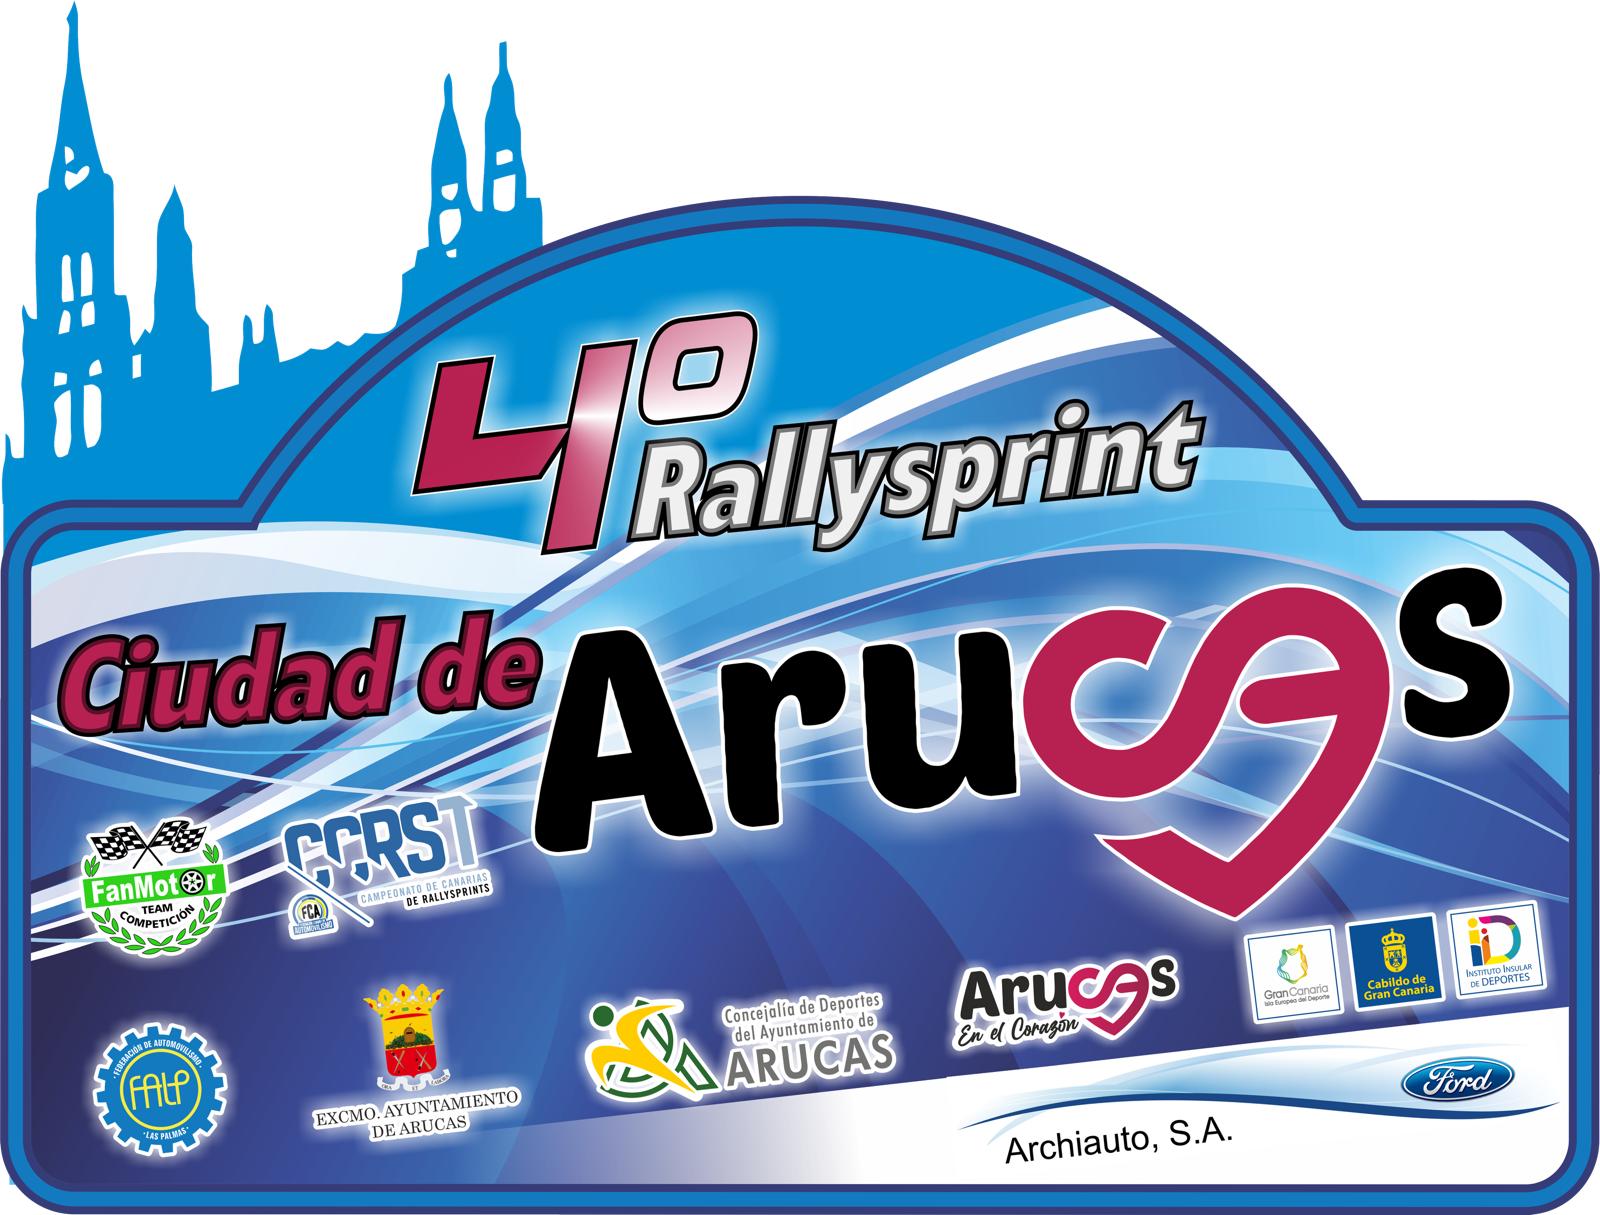 El Campeonato de Canarias de Rallysprint se inicia el 13 de abril en Arucas